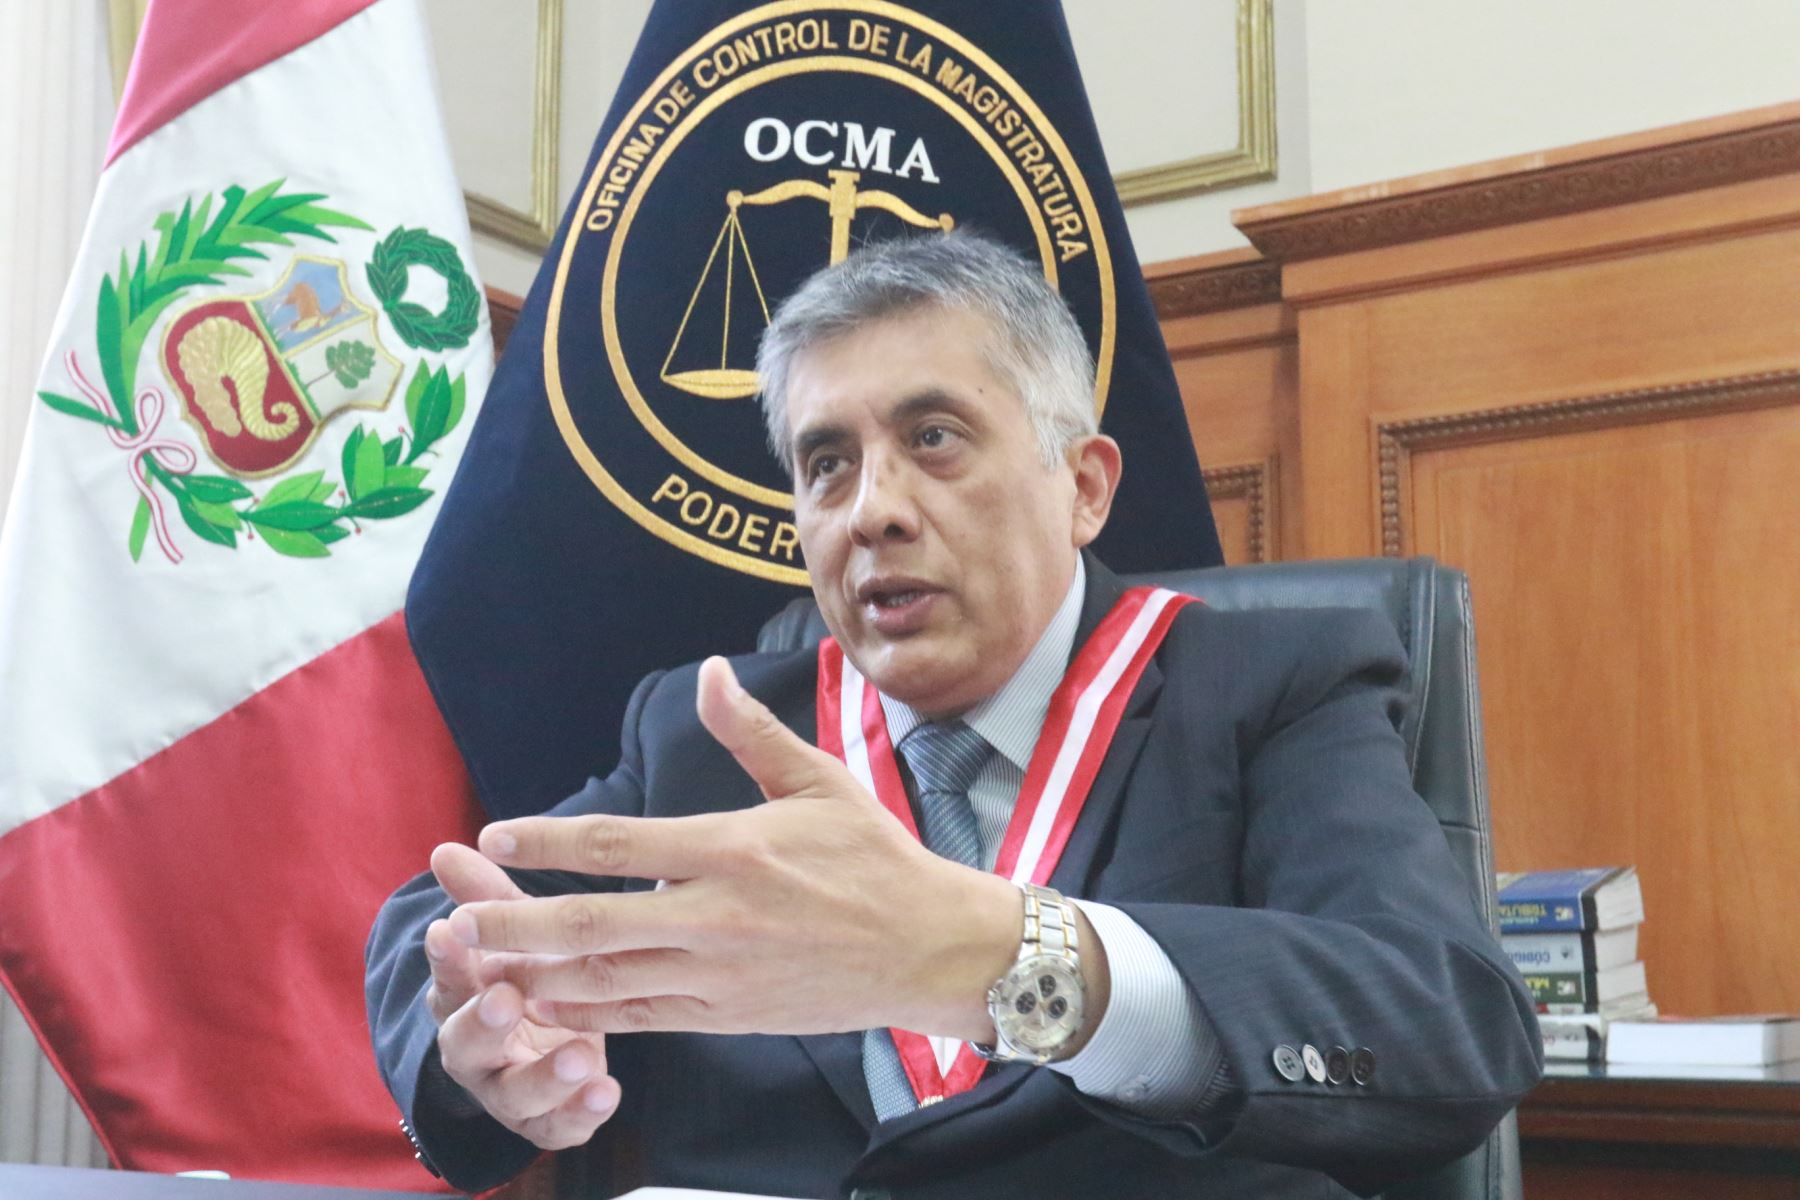 El jefe de OCMA dio inicio hoy una visita judicial extraordinaria a la Corte Superior de Justicia de Lima Sur